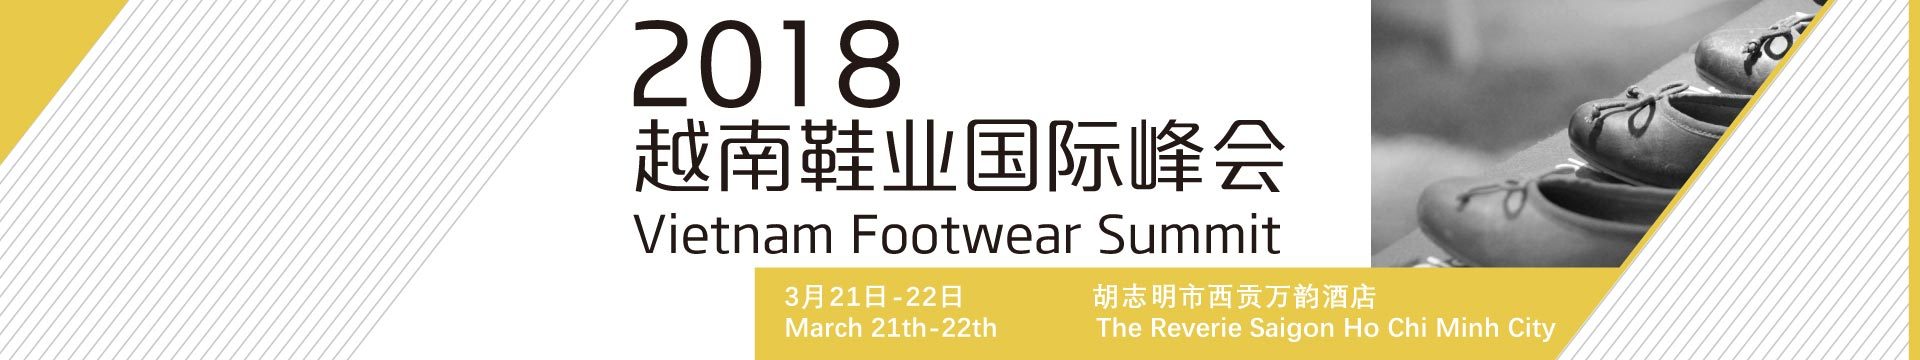 2018越南鞋业国际峰会